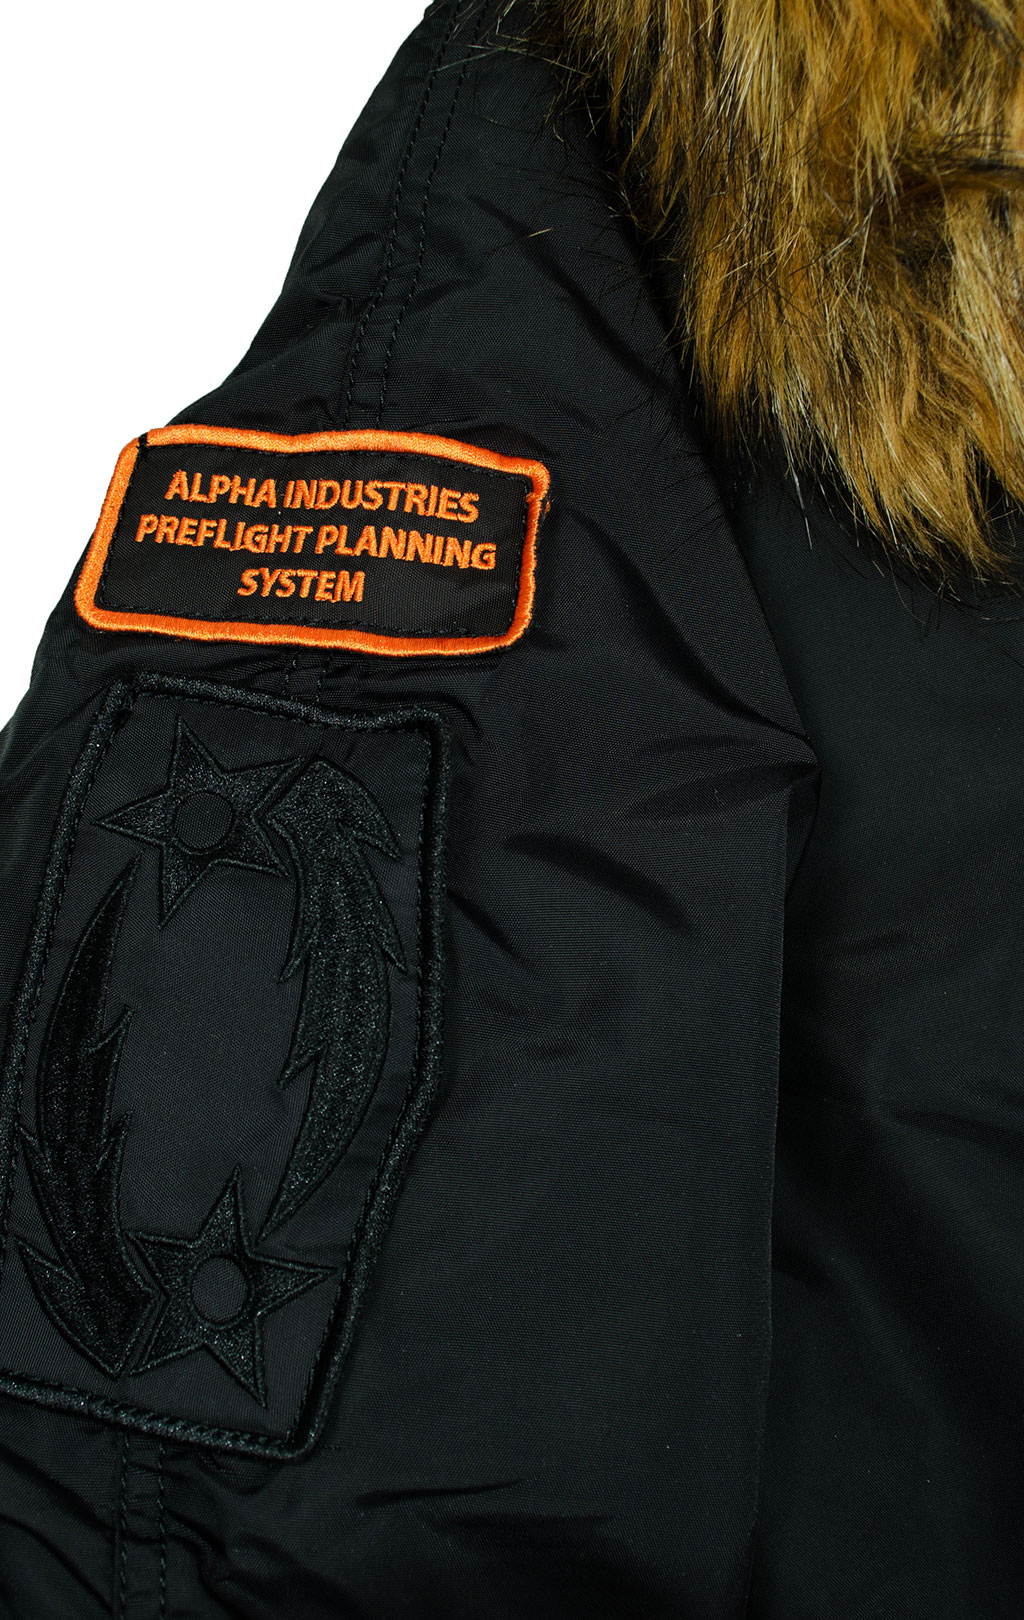 Аляска короткая ALPHA INDUSTRIES PPS N-2B black/orange 